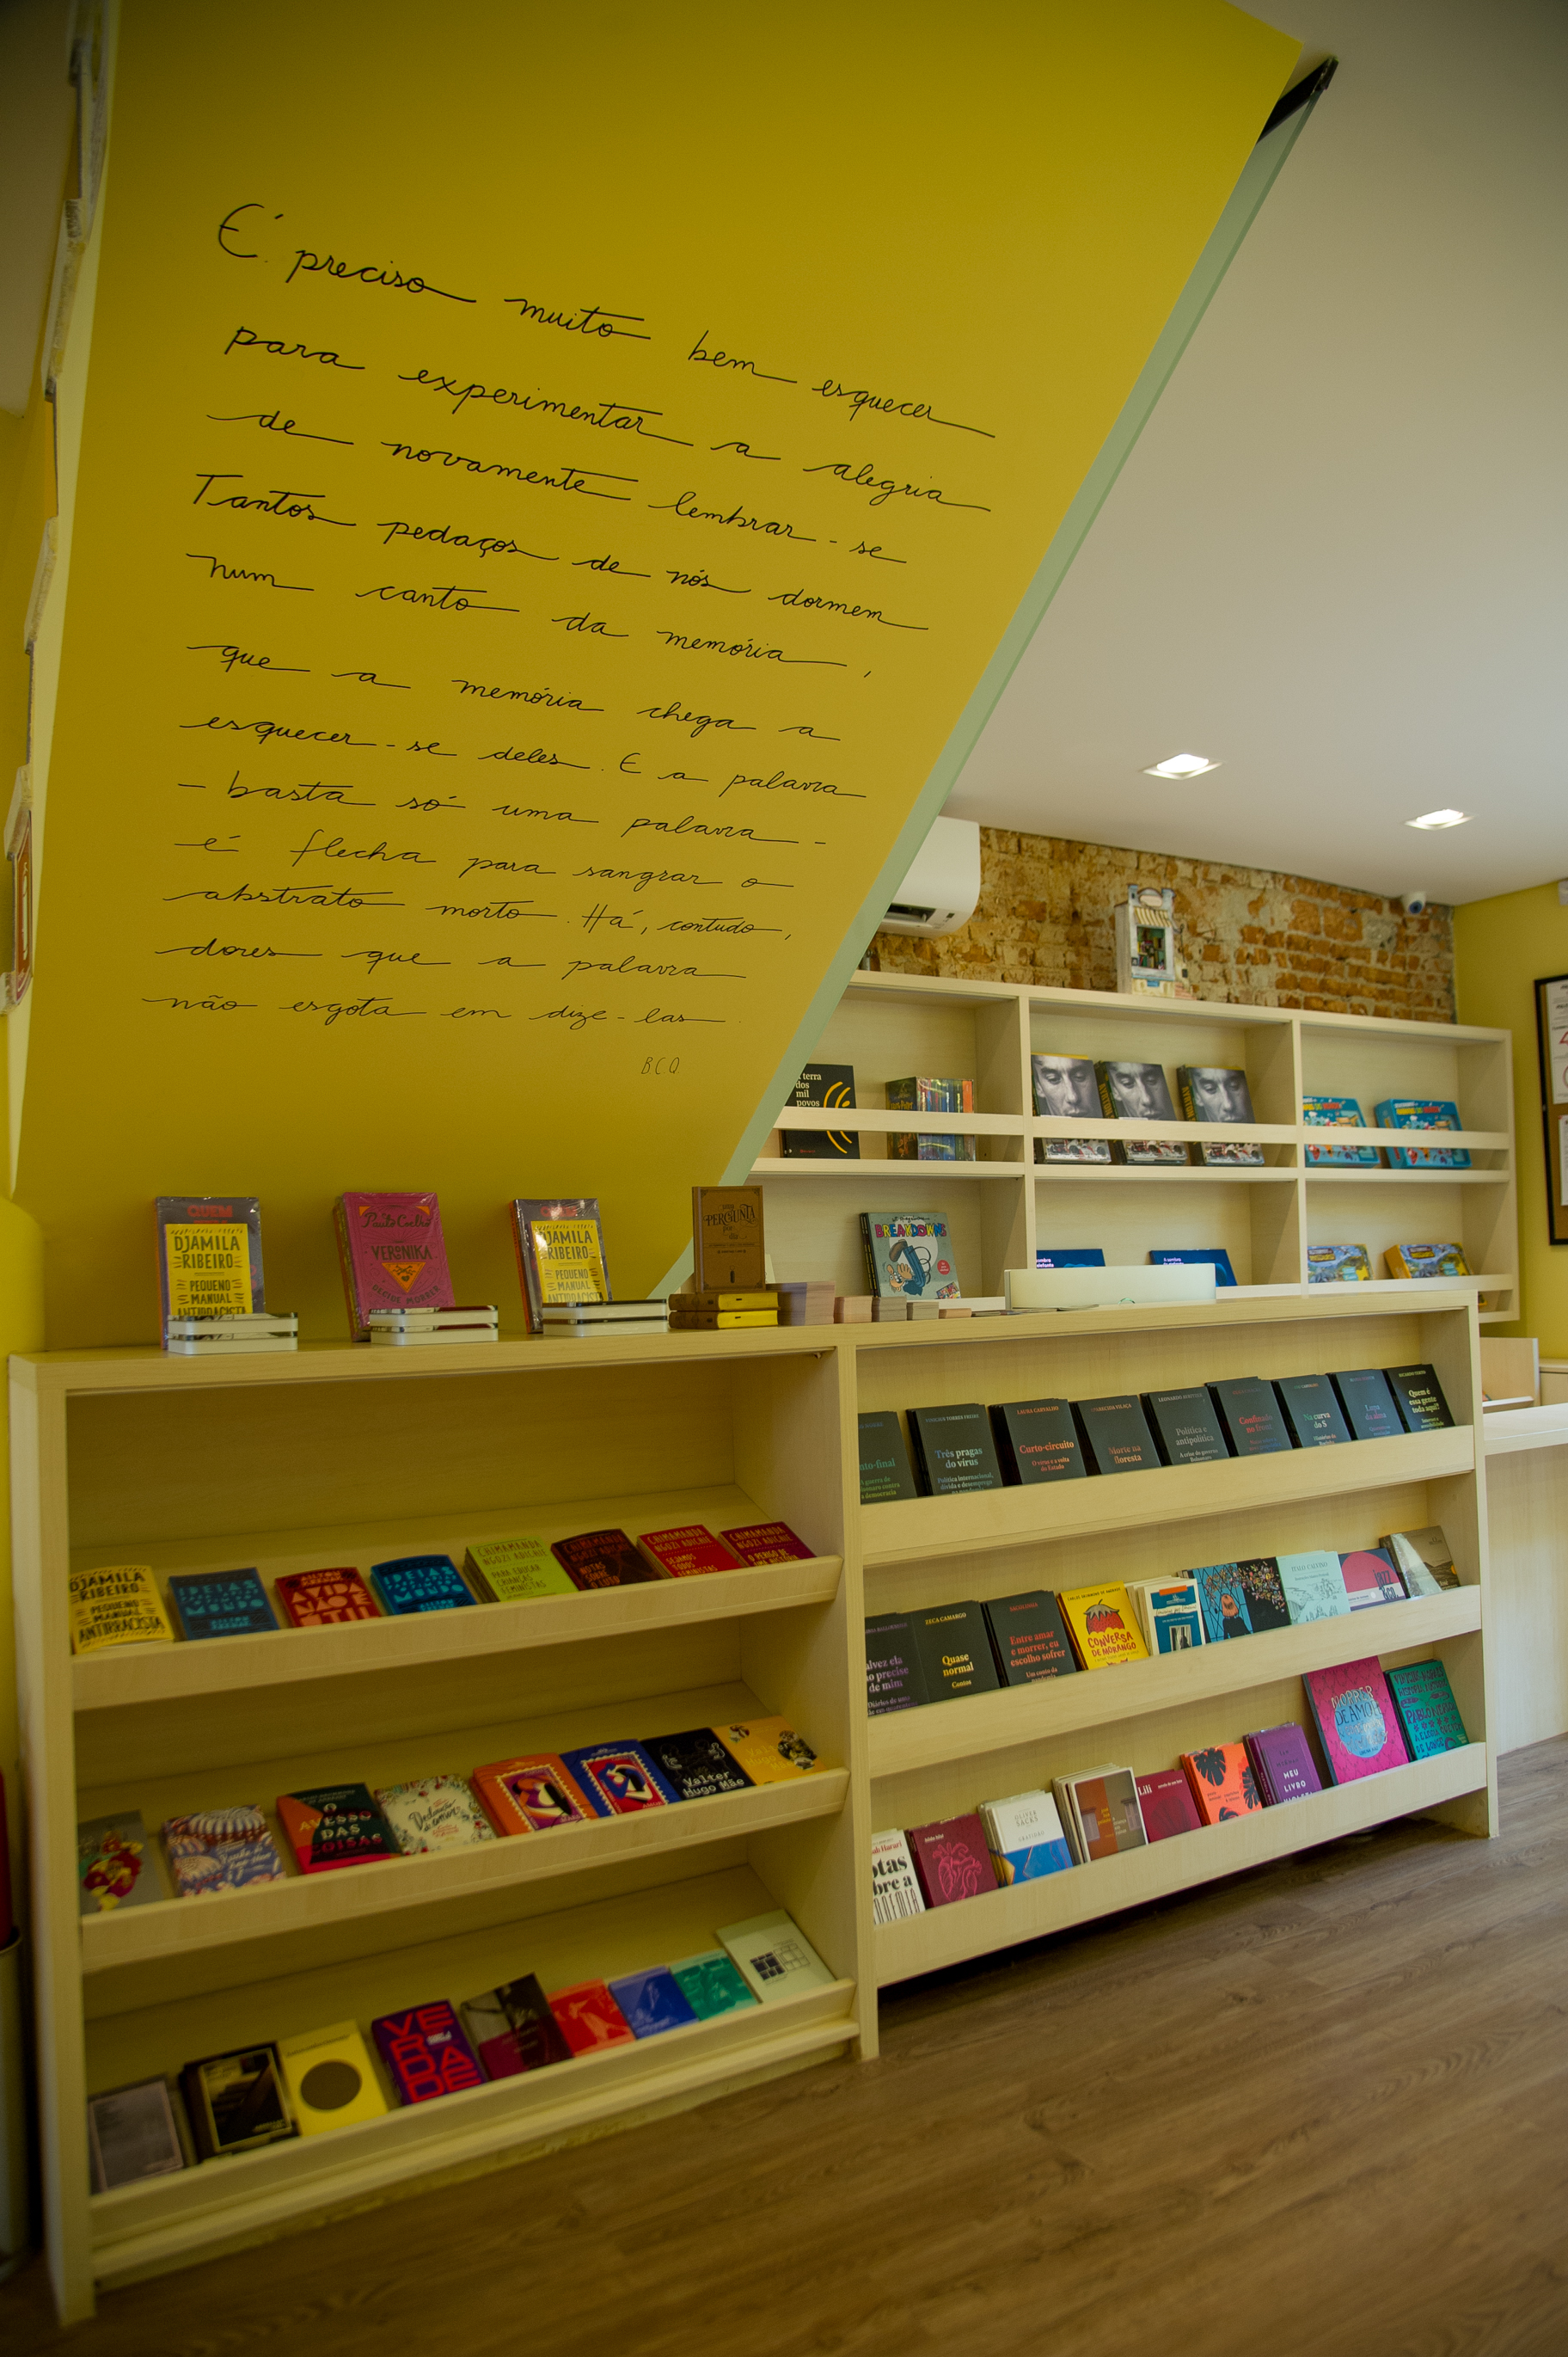 Foto exibe teto na diagonal com grande texto escrito na parede branca. Abaixo, grande prateleira de madeira com livros.